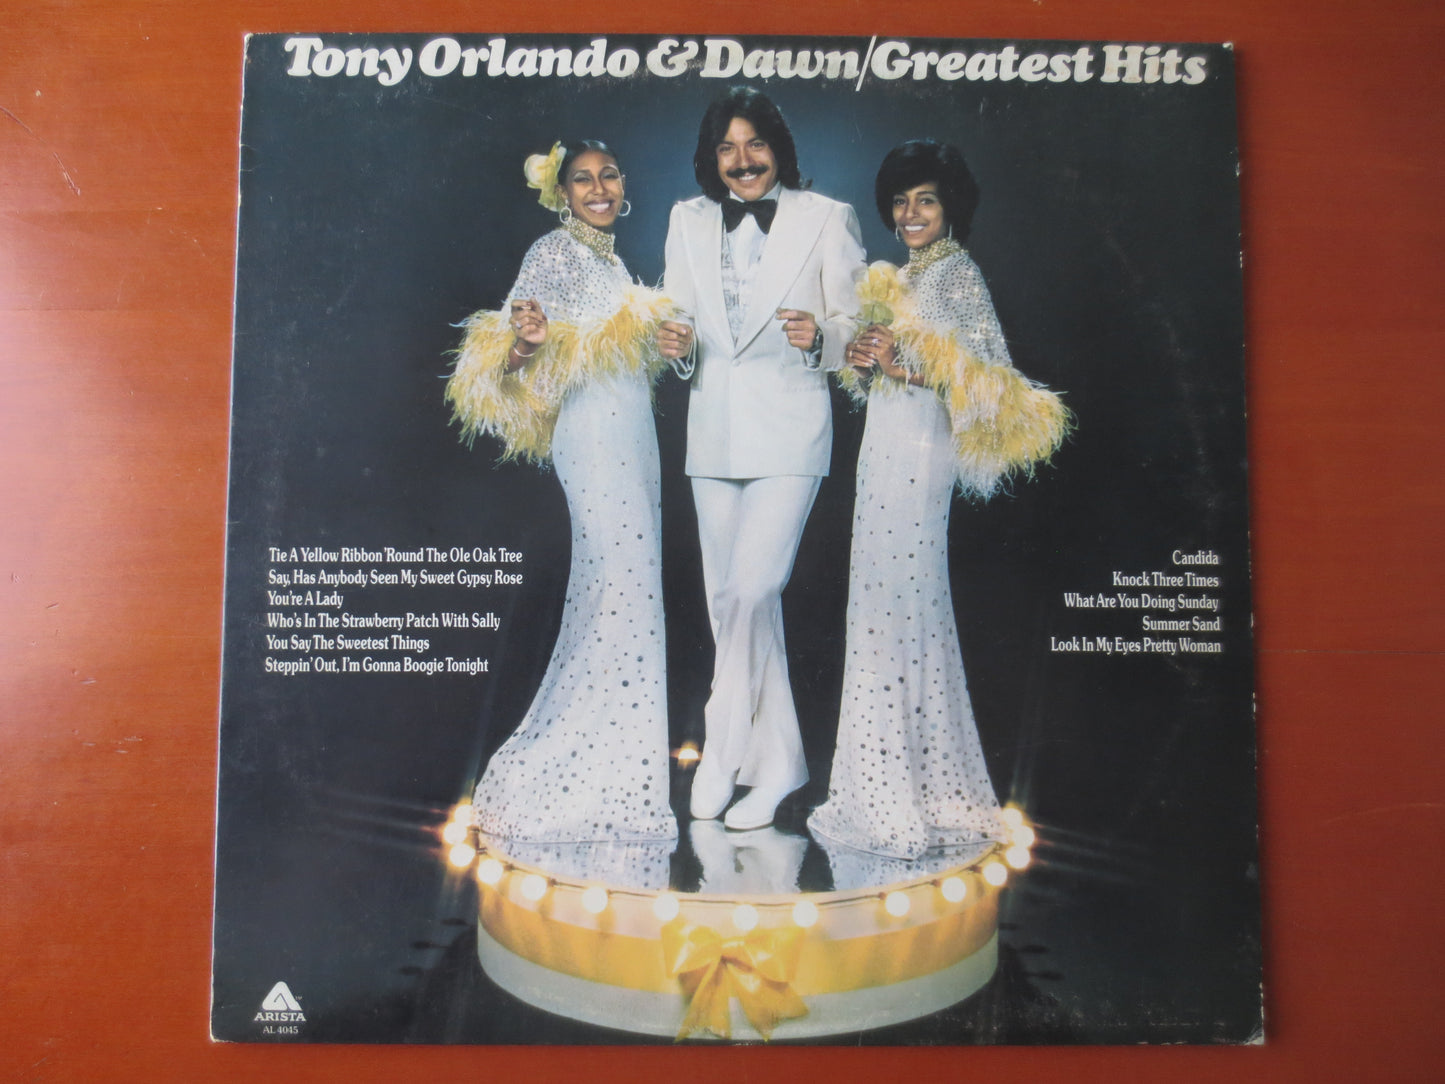 DAWN, TONY ORLANDO Album, Dawn Album, Dawn Vinyl, Dawn Lp, Vintage Vinyl, Records, Vinyl, Vinyl Albums, 1973 Records